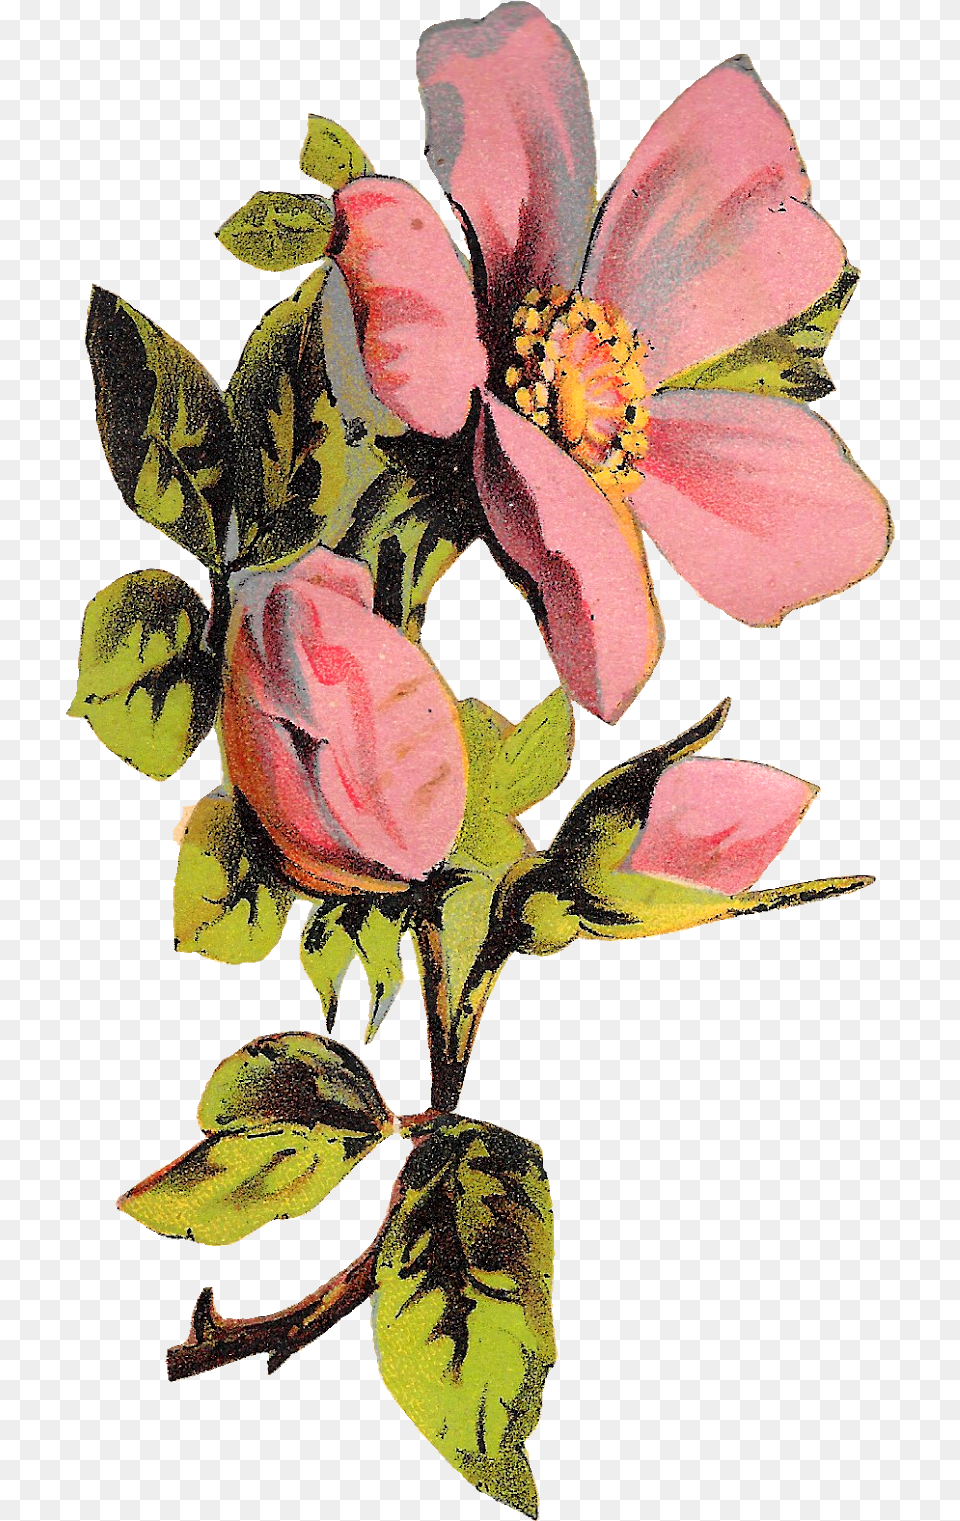 Download Flower Rose Floral Botanical Background Floral Illustration, Petal, Plant, Anemone Free Transparent Png